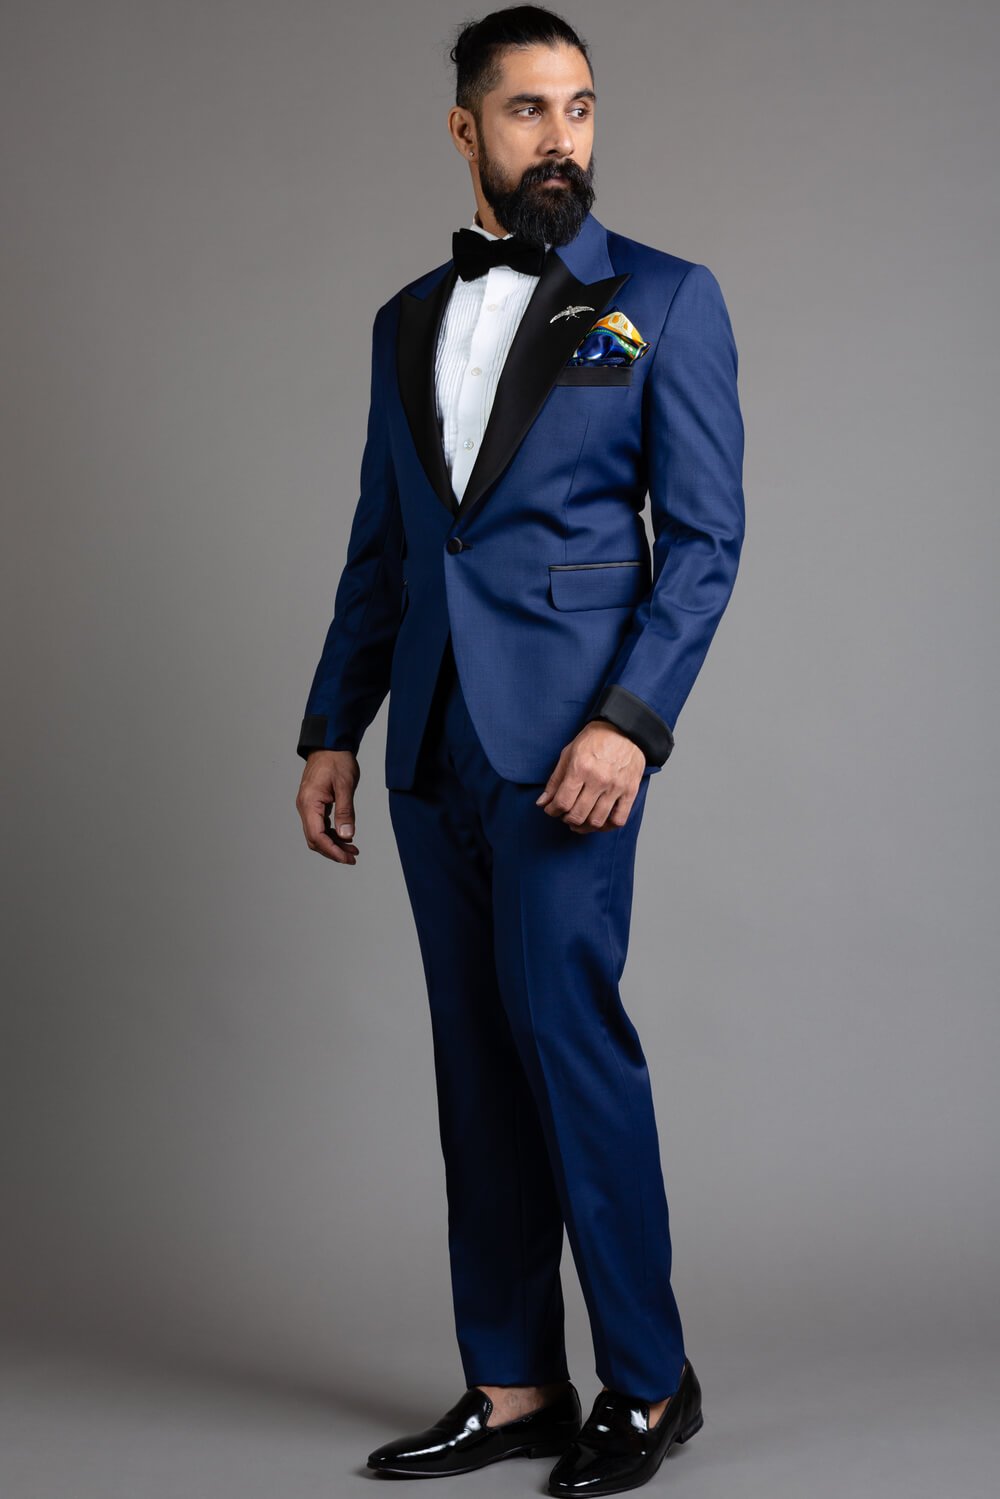 Wedding Suits for Men | Buy Groom Wedding Suits/Coat Online in Dubai ...